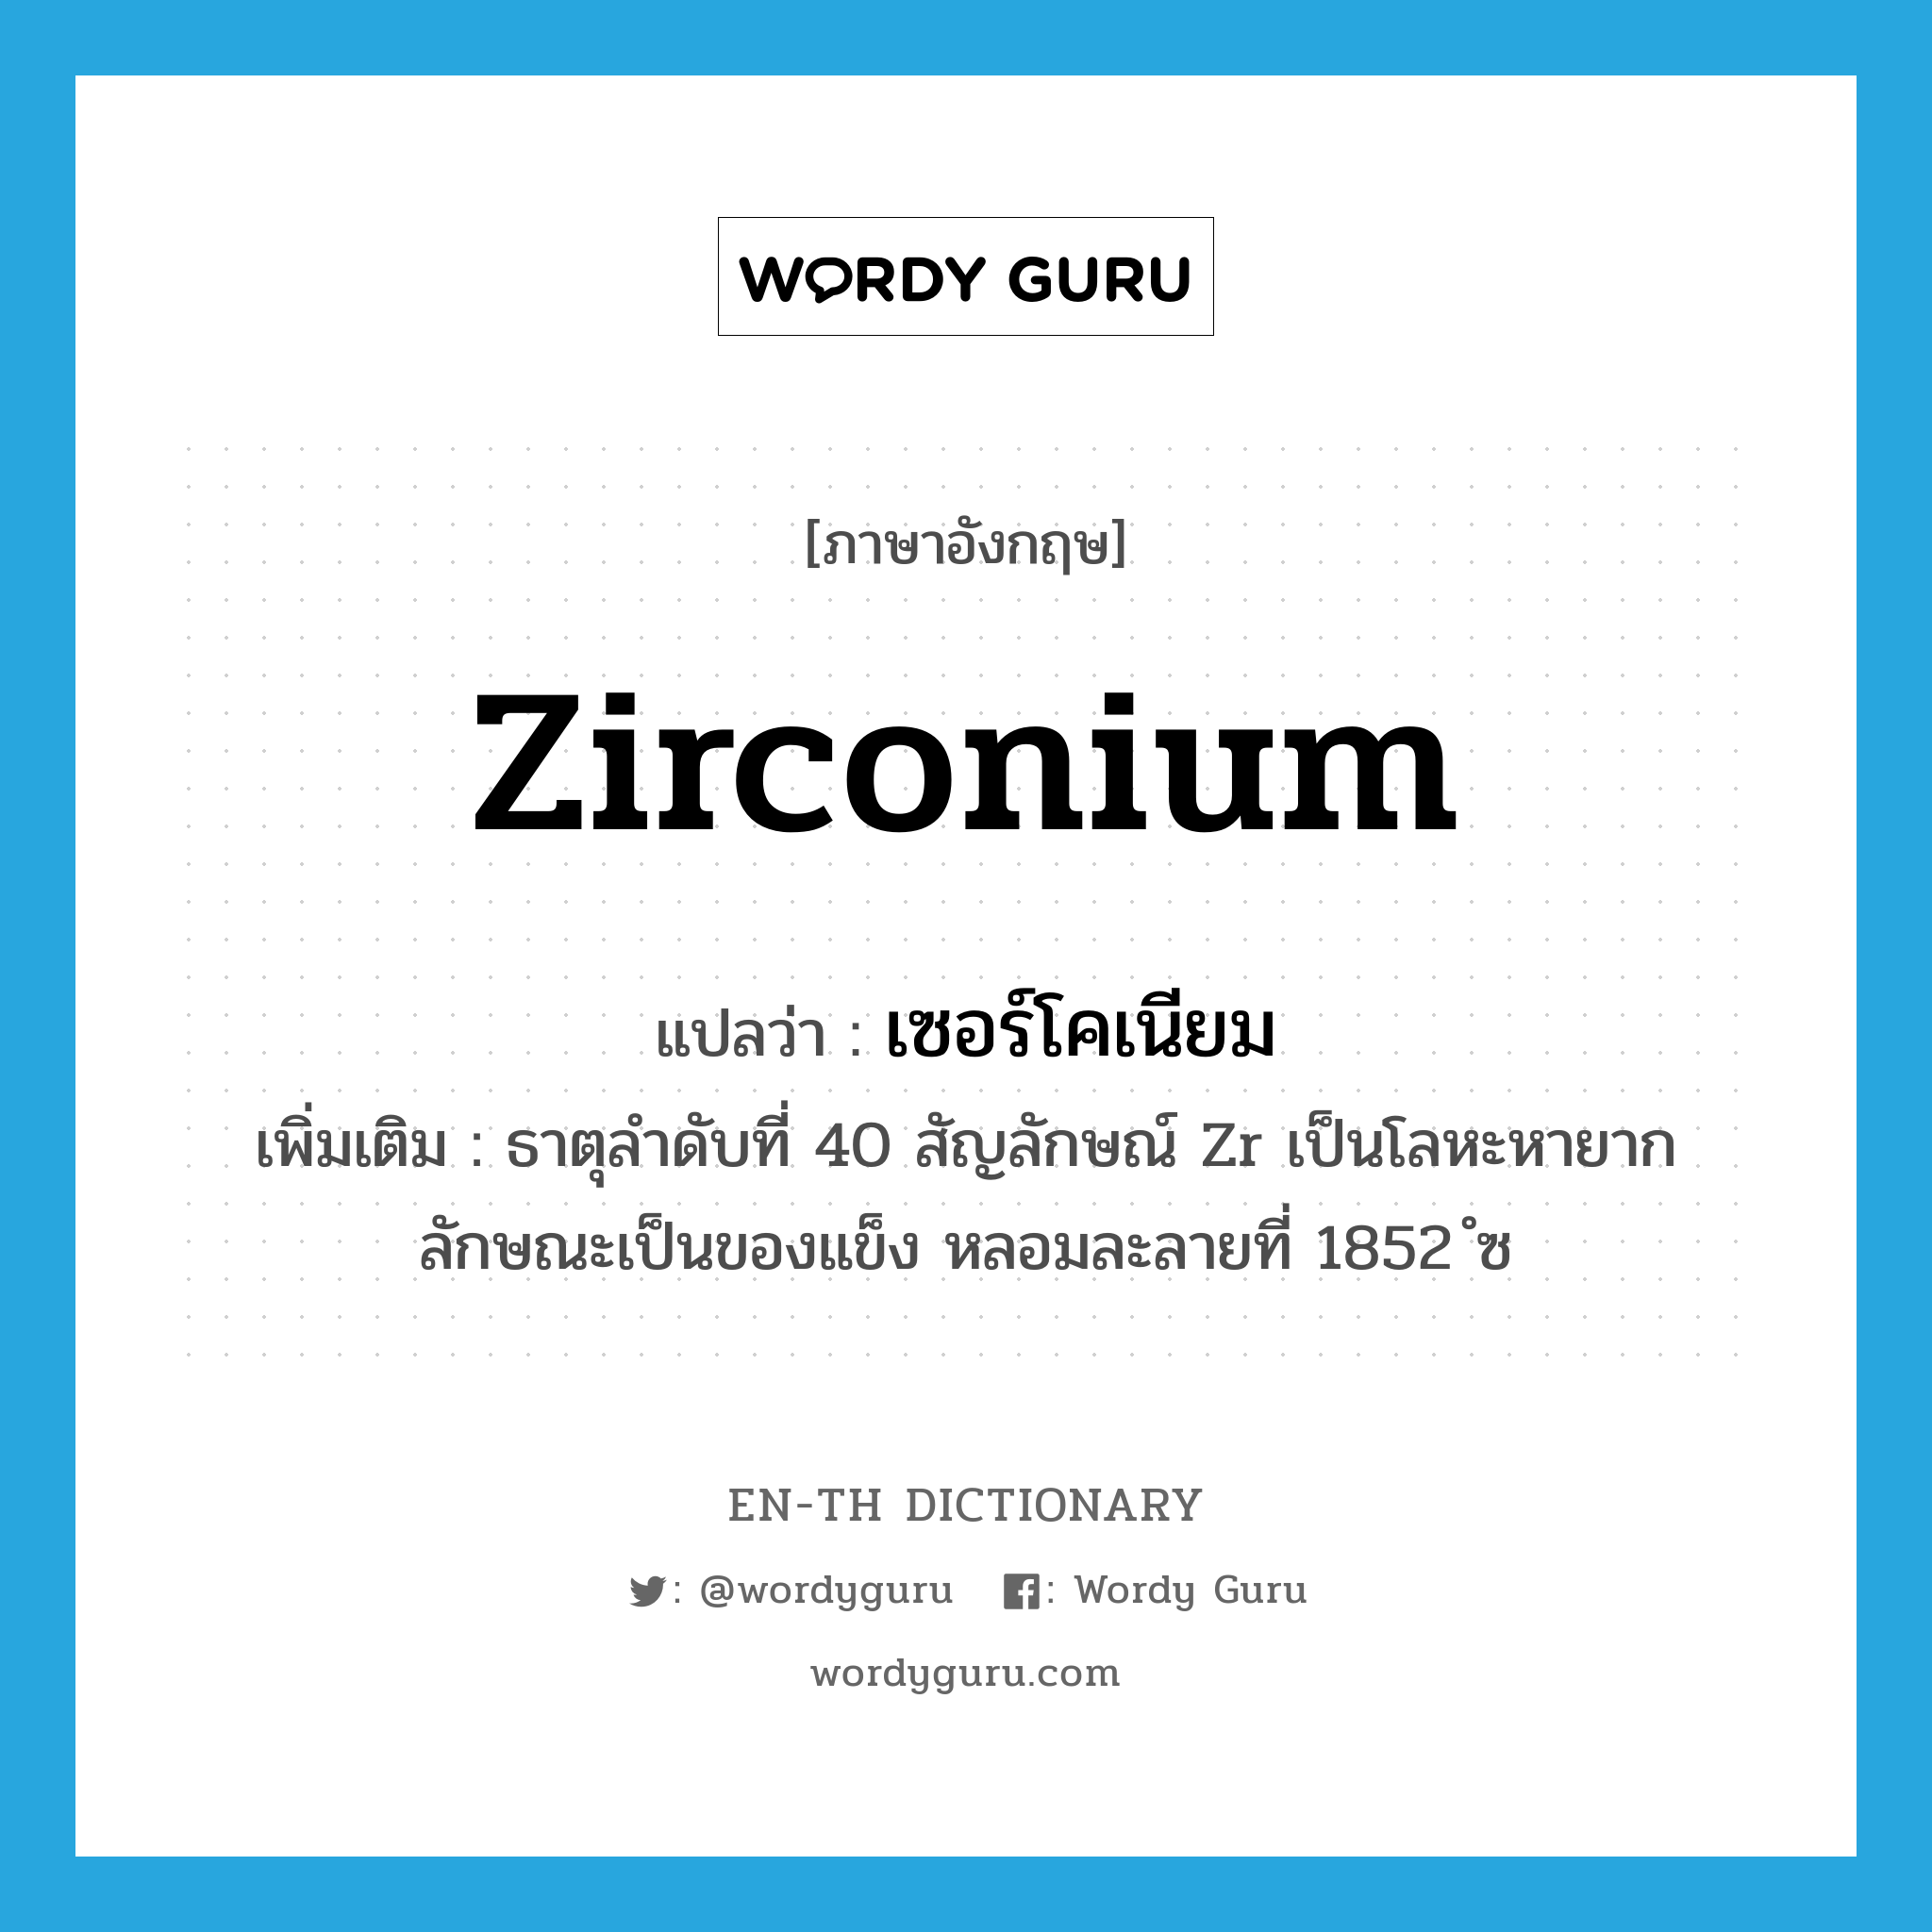 เซอร์โคเนียม ภาษาอังกฤษ?, คำศัพท์ภาษาอังกฤษ เซอร์โคเนียม แปลว่า zirconium ประเภท N เพิ่มเติม ธาตุลำดับที่ 40 สัญลักษณ์ Zr เป็นโลหะหายาก ลักษณะเป็นของแข็ง หลอมละลายที่ 1852 ํซ หมวด N